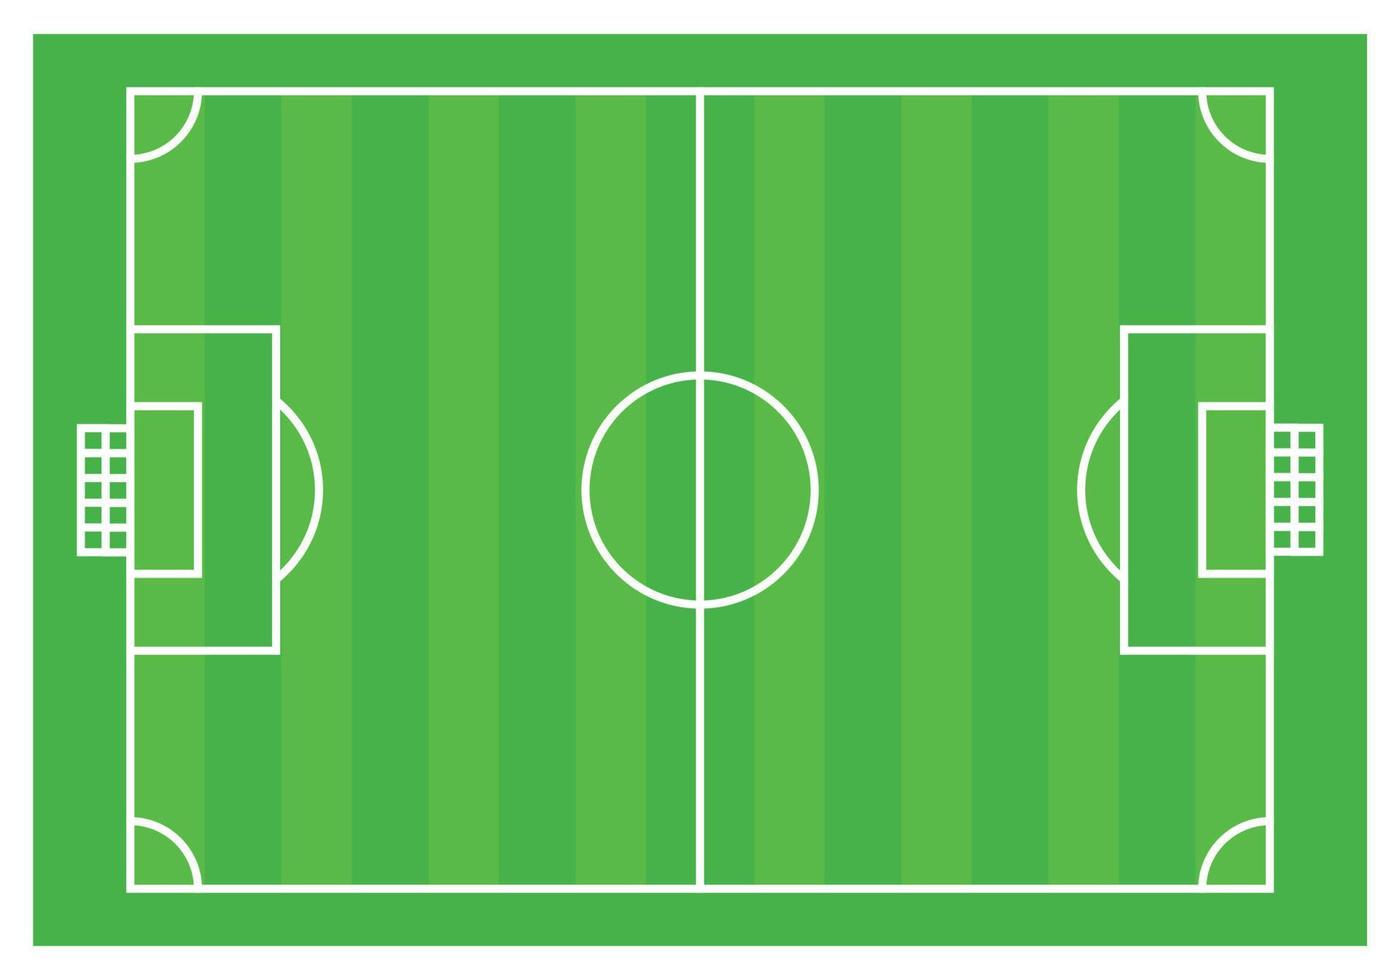 Soccer basic ground plan. vector illustration